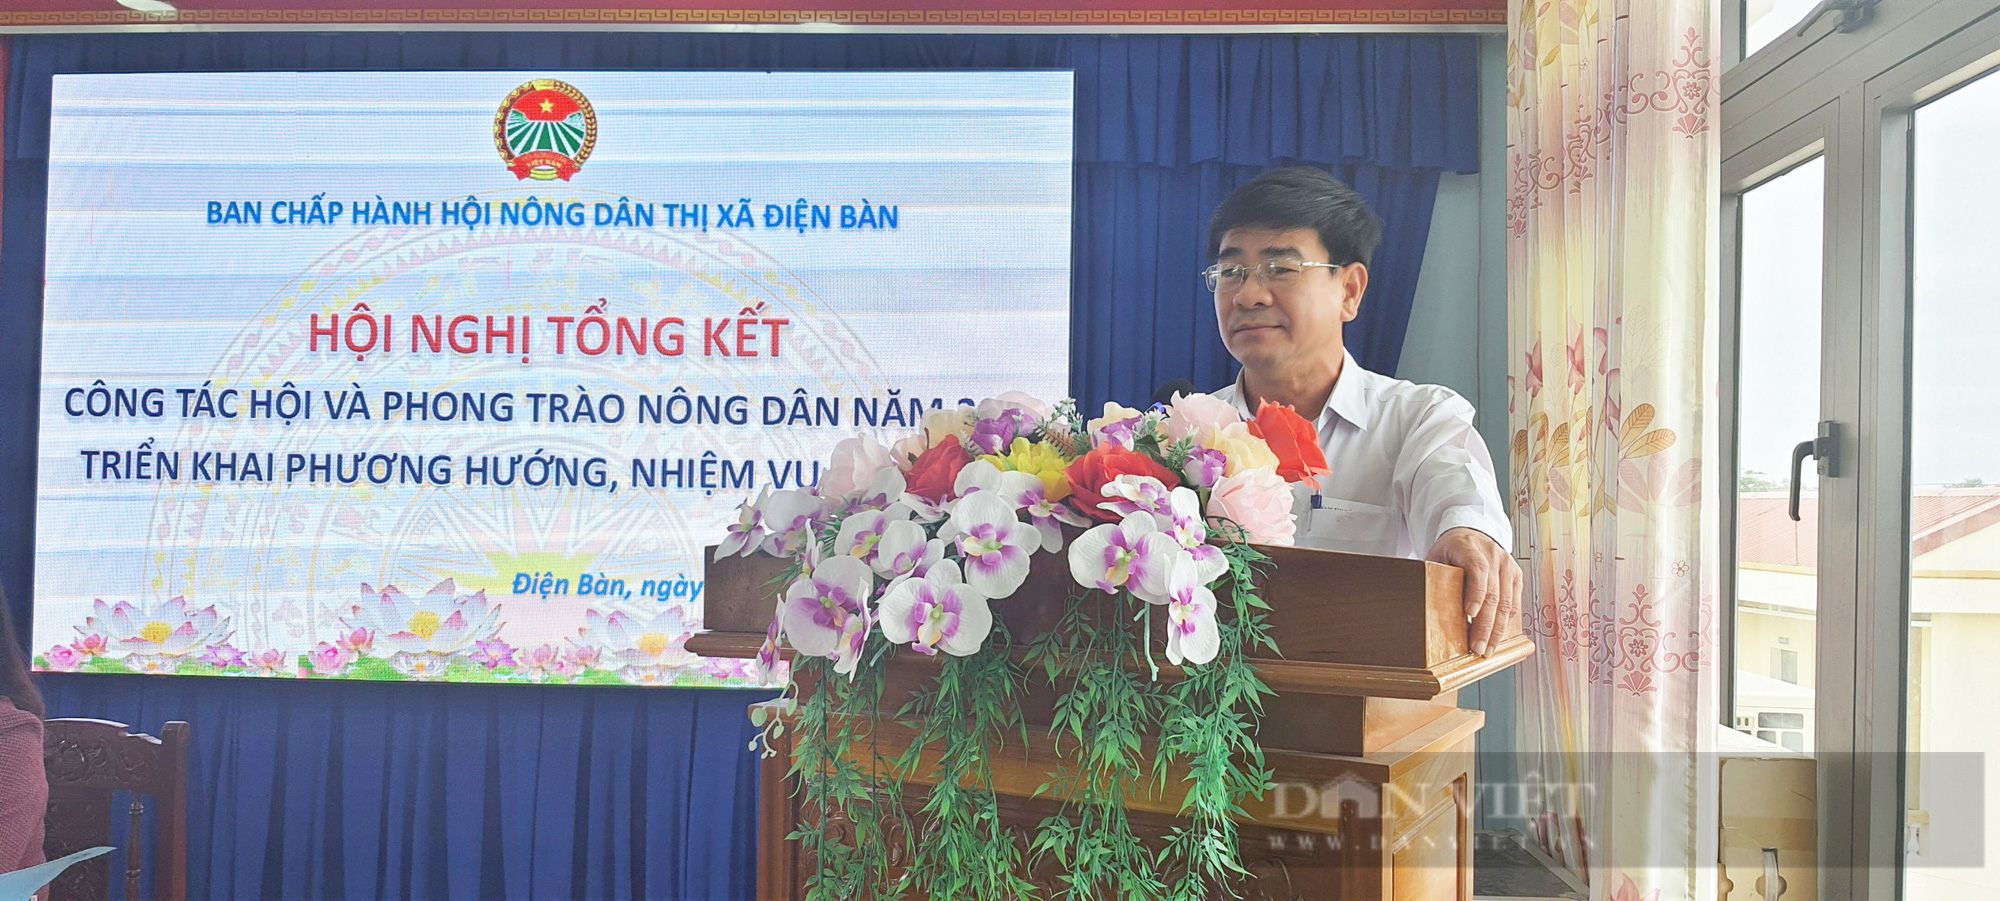 Vượt thách thức, Hội Nông dân thị xã Điện Bàn dẫn đầu thi đua toàn tỉnh Quảng Nam - Ảnh 5.